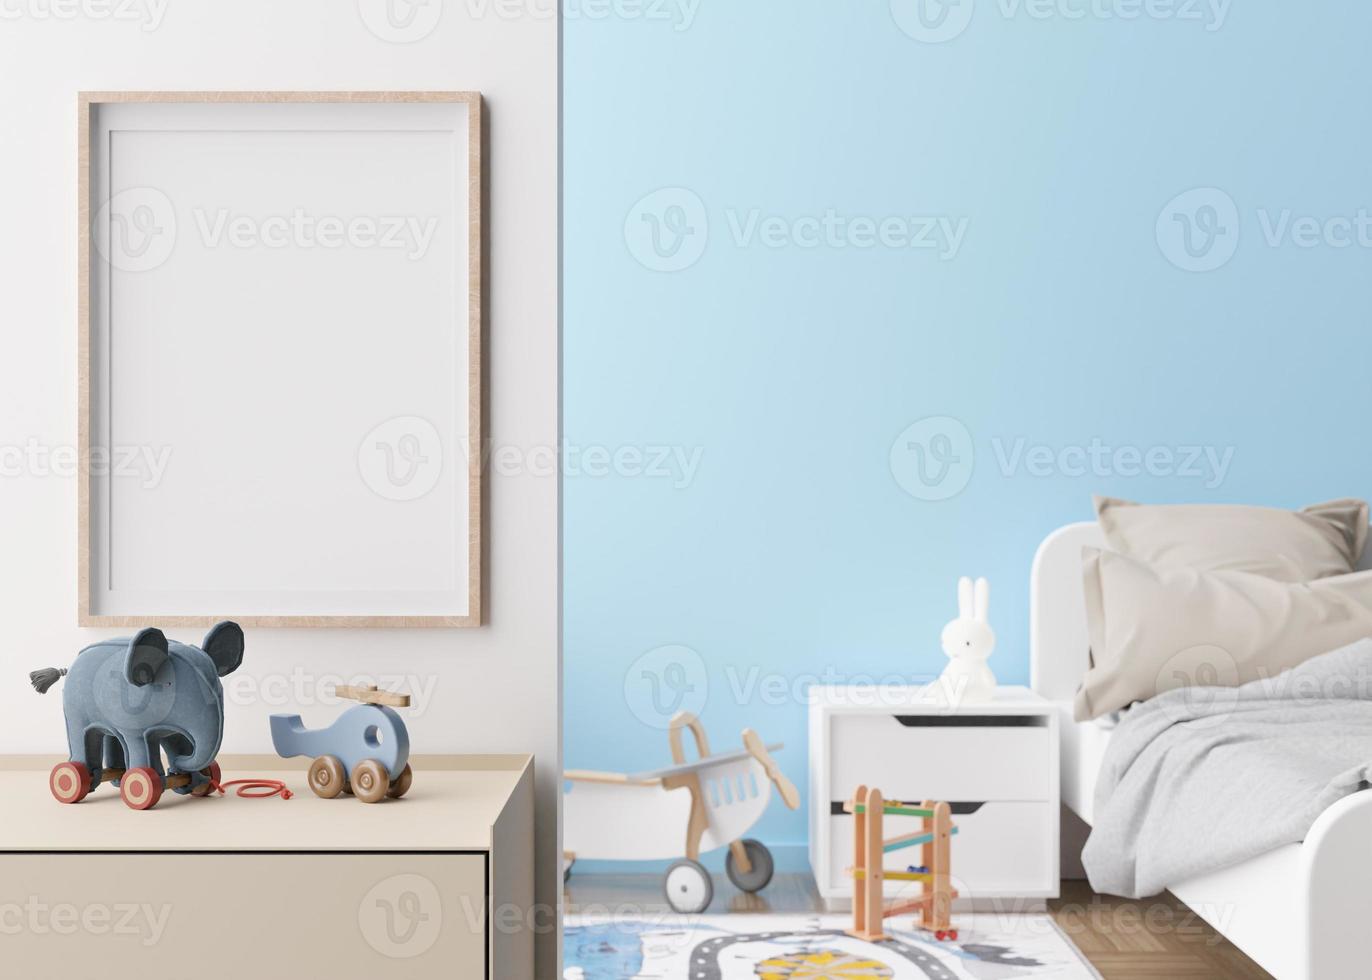 cadre photo vertical vide sur un mur blanc dans une chambre d'enfant moderne. maquette d'intérieur dans un style scandinave contemporain. gratuit, copiez l'espace pour l'image. lit, jouets. chambre cosy pour les enfants. rendu 3d.